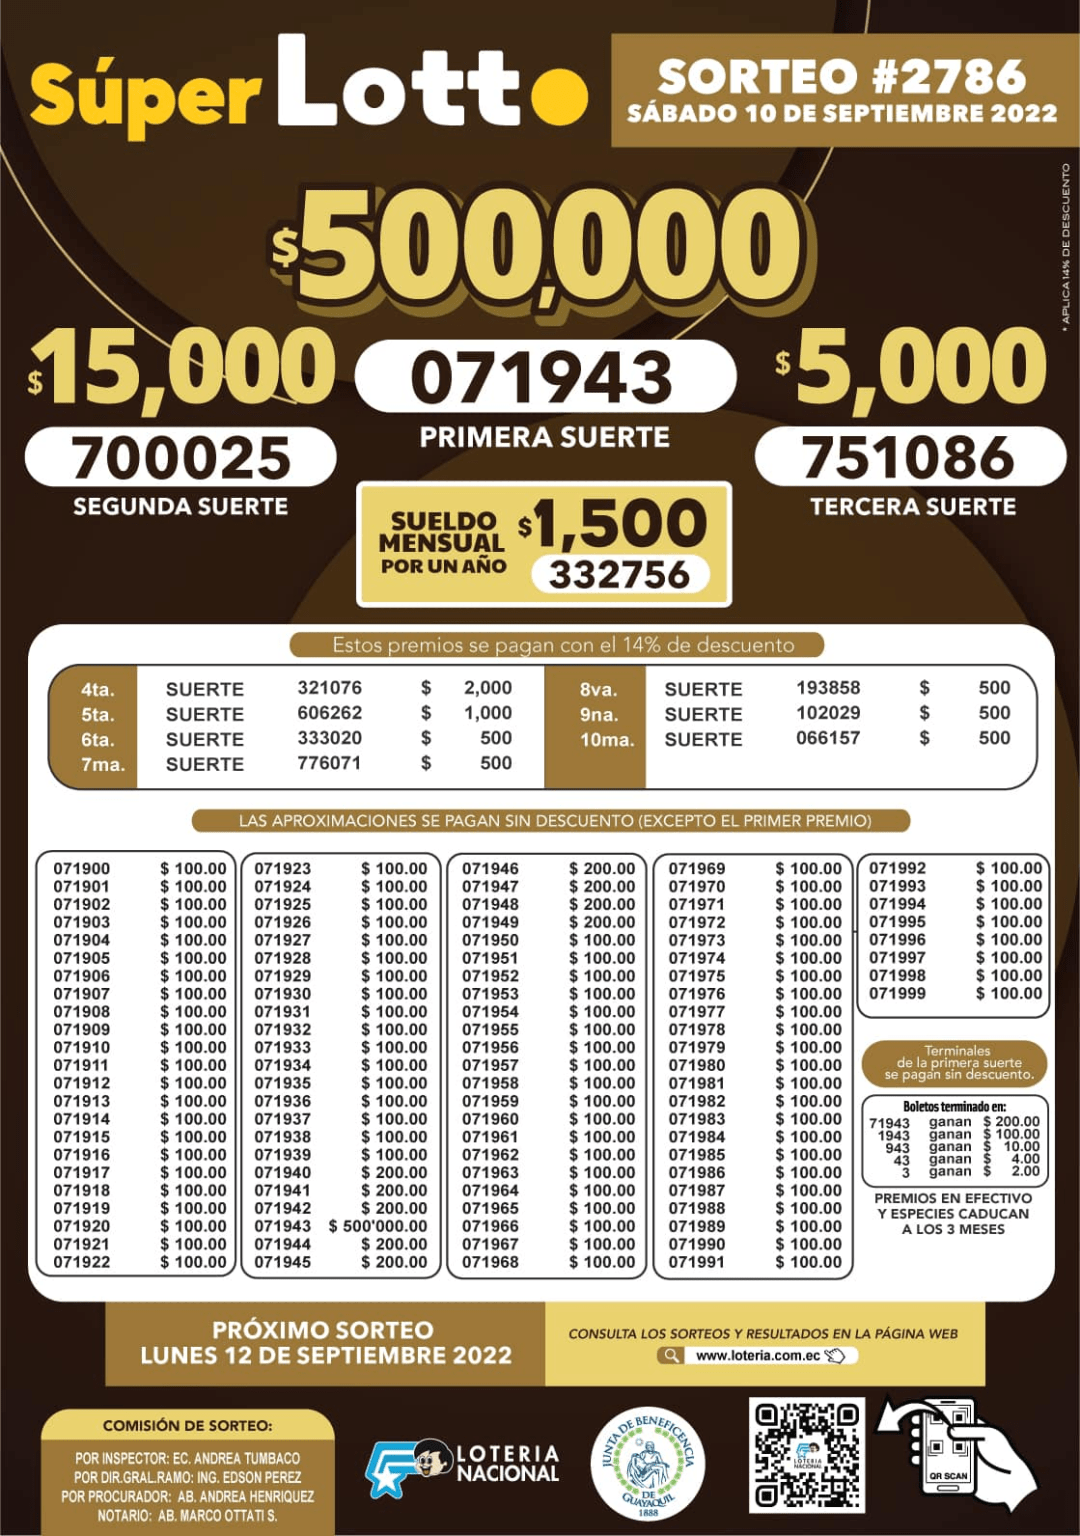 resultados-y-bolet-n-super-lotto-sorteo-2786-consulta-los-boletos